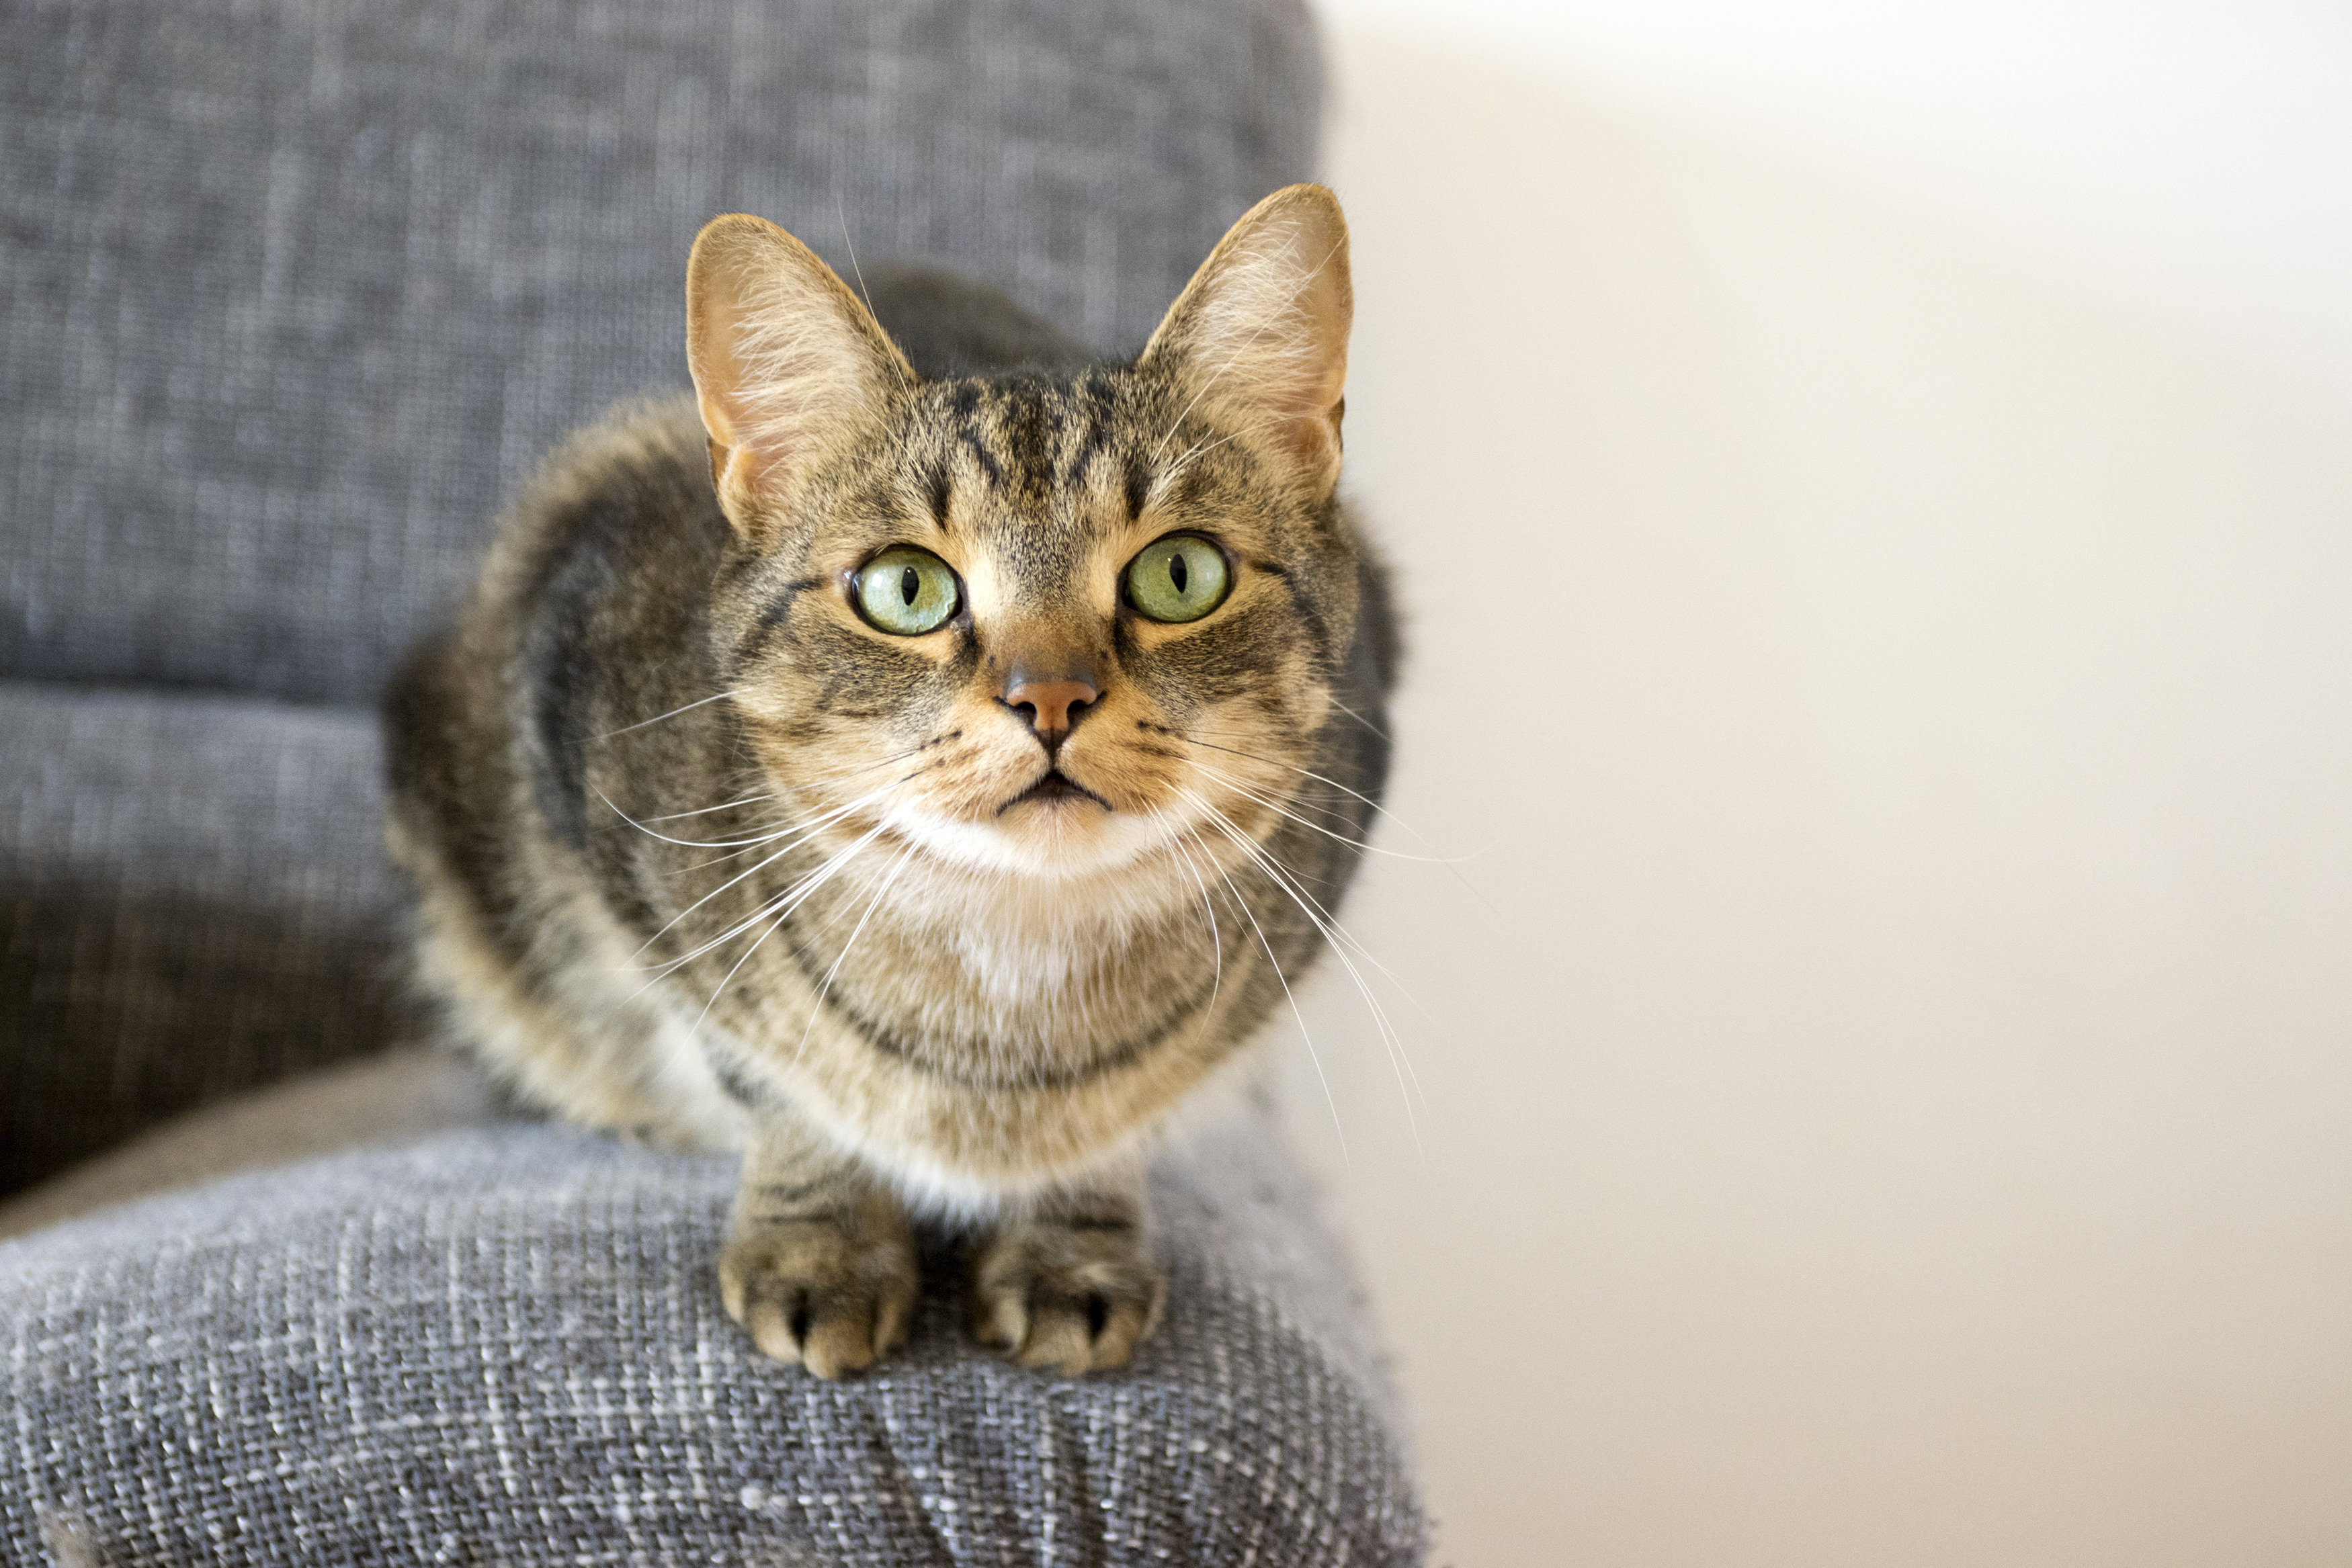 Colorado House Cat Tests Positive for Bubonic Plague